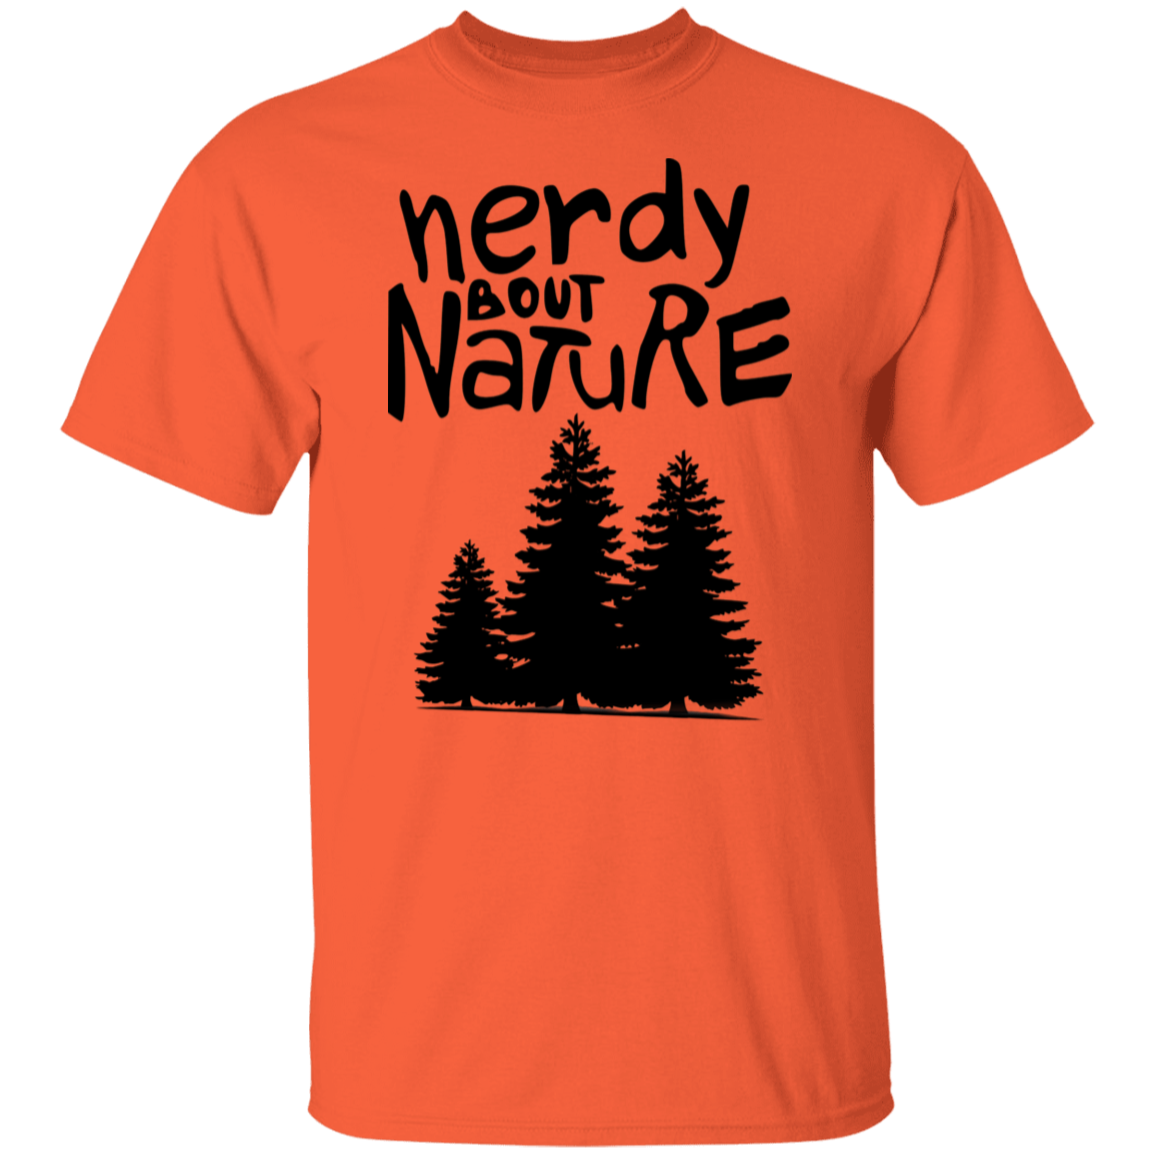 Nerdy 'Bout Nature T-Shirt